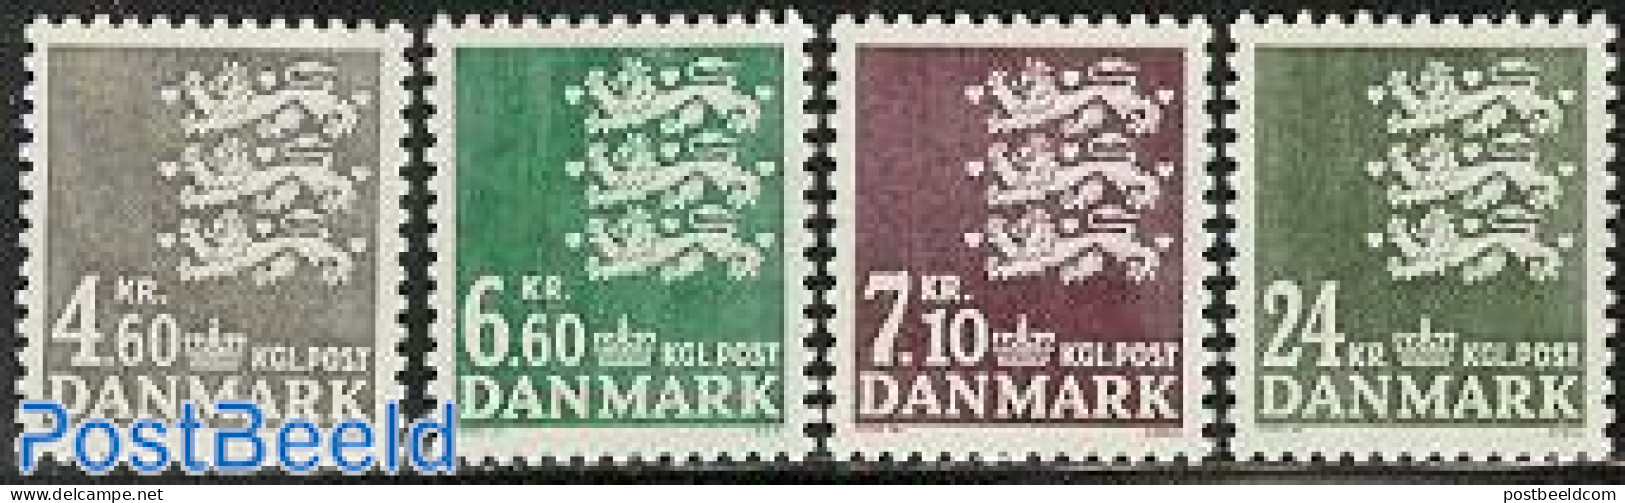 Denmark 1988 Definitives 4v, Mint NH - Ongebruikt